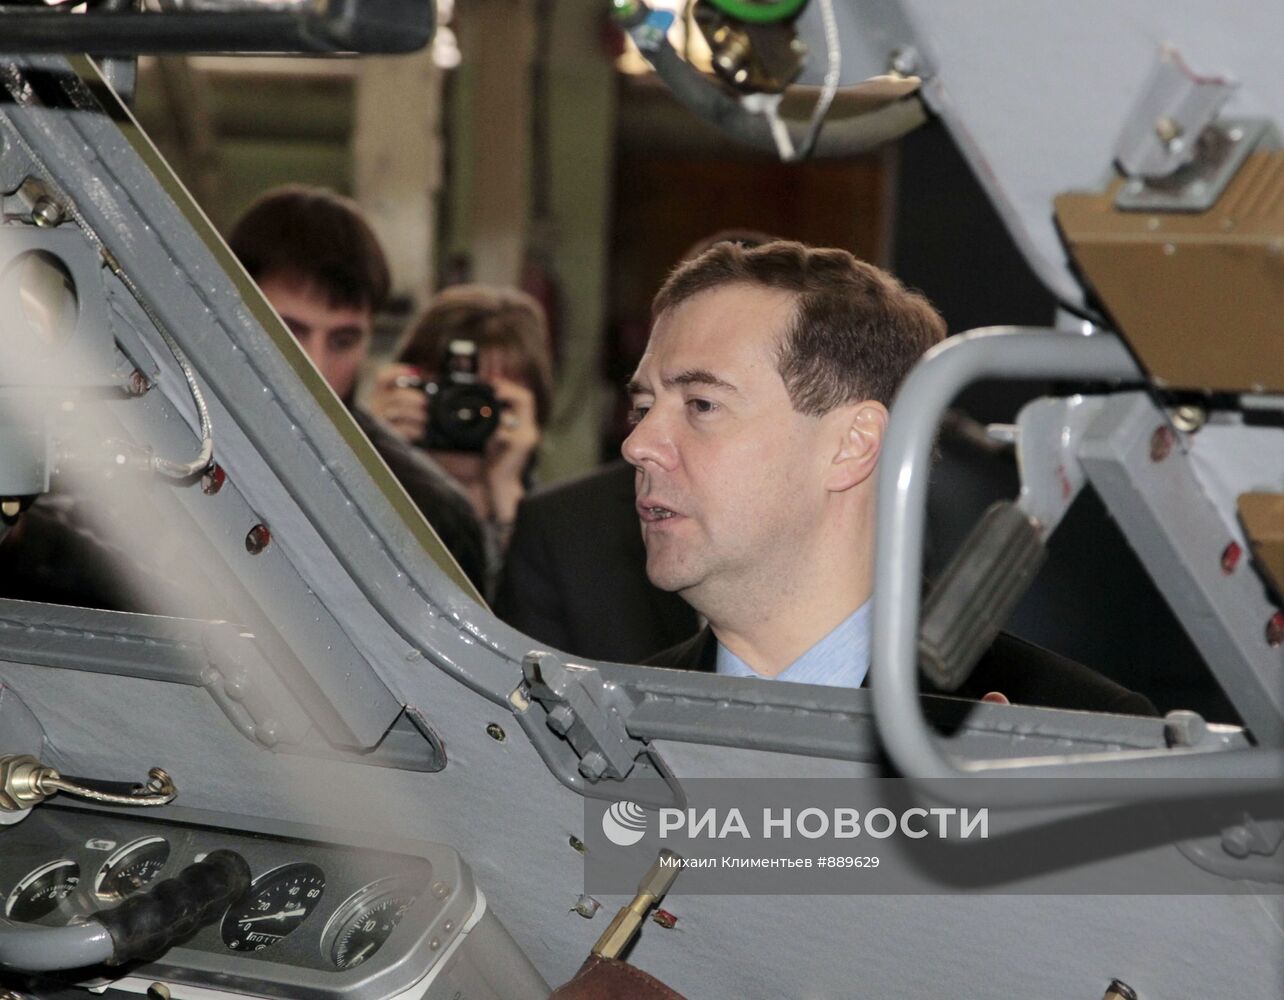 Посещение Д.Медведевым Мытищинского завода "Метровагонмаш"